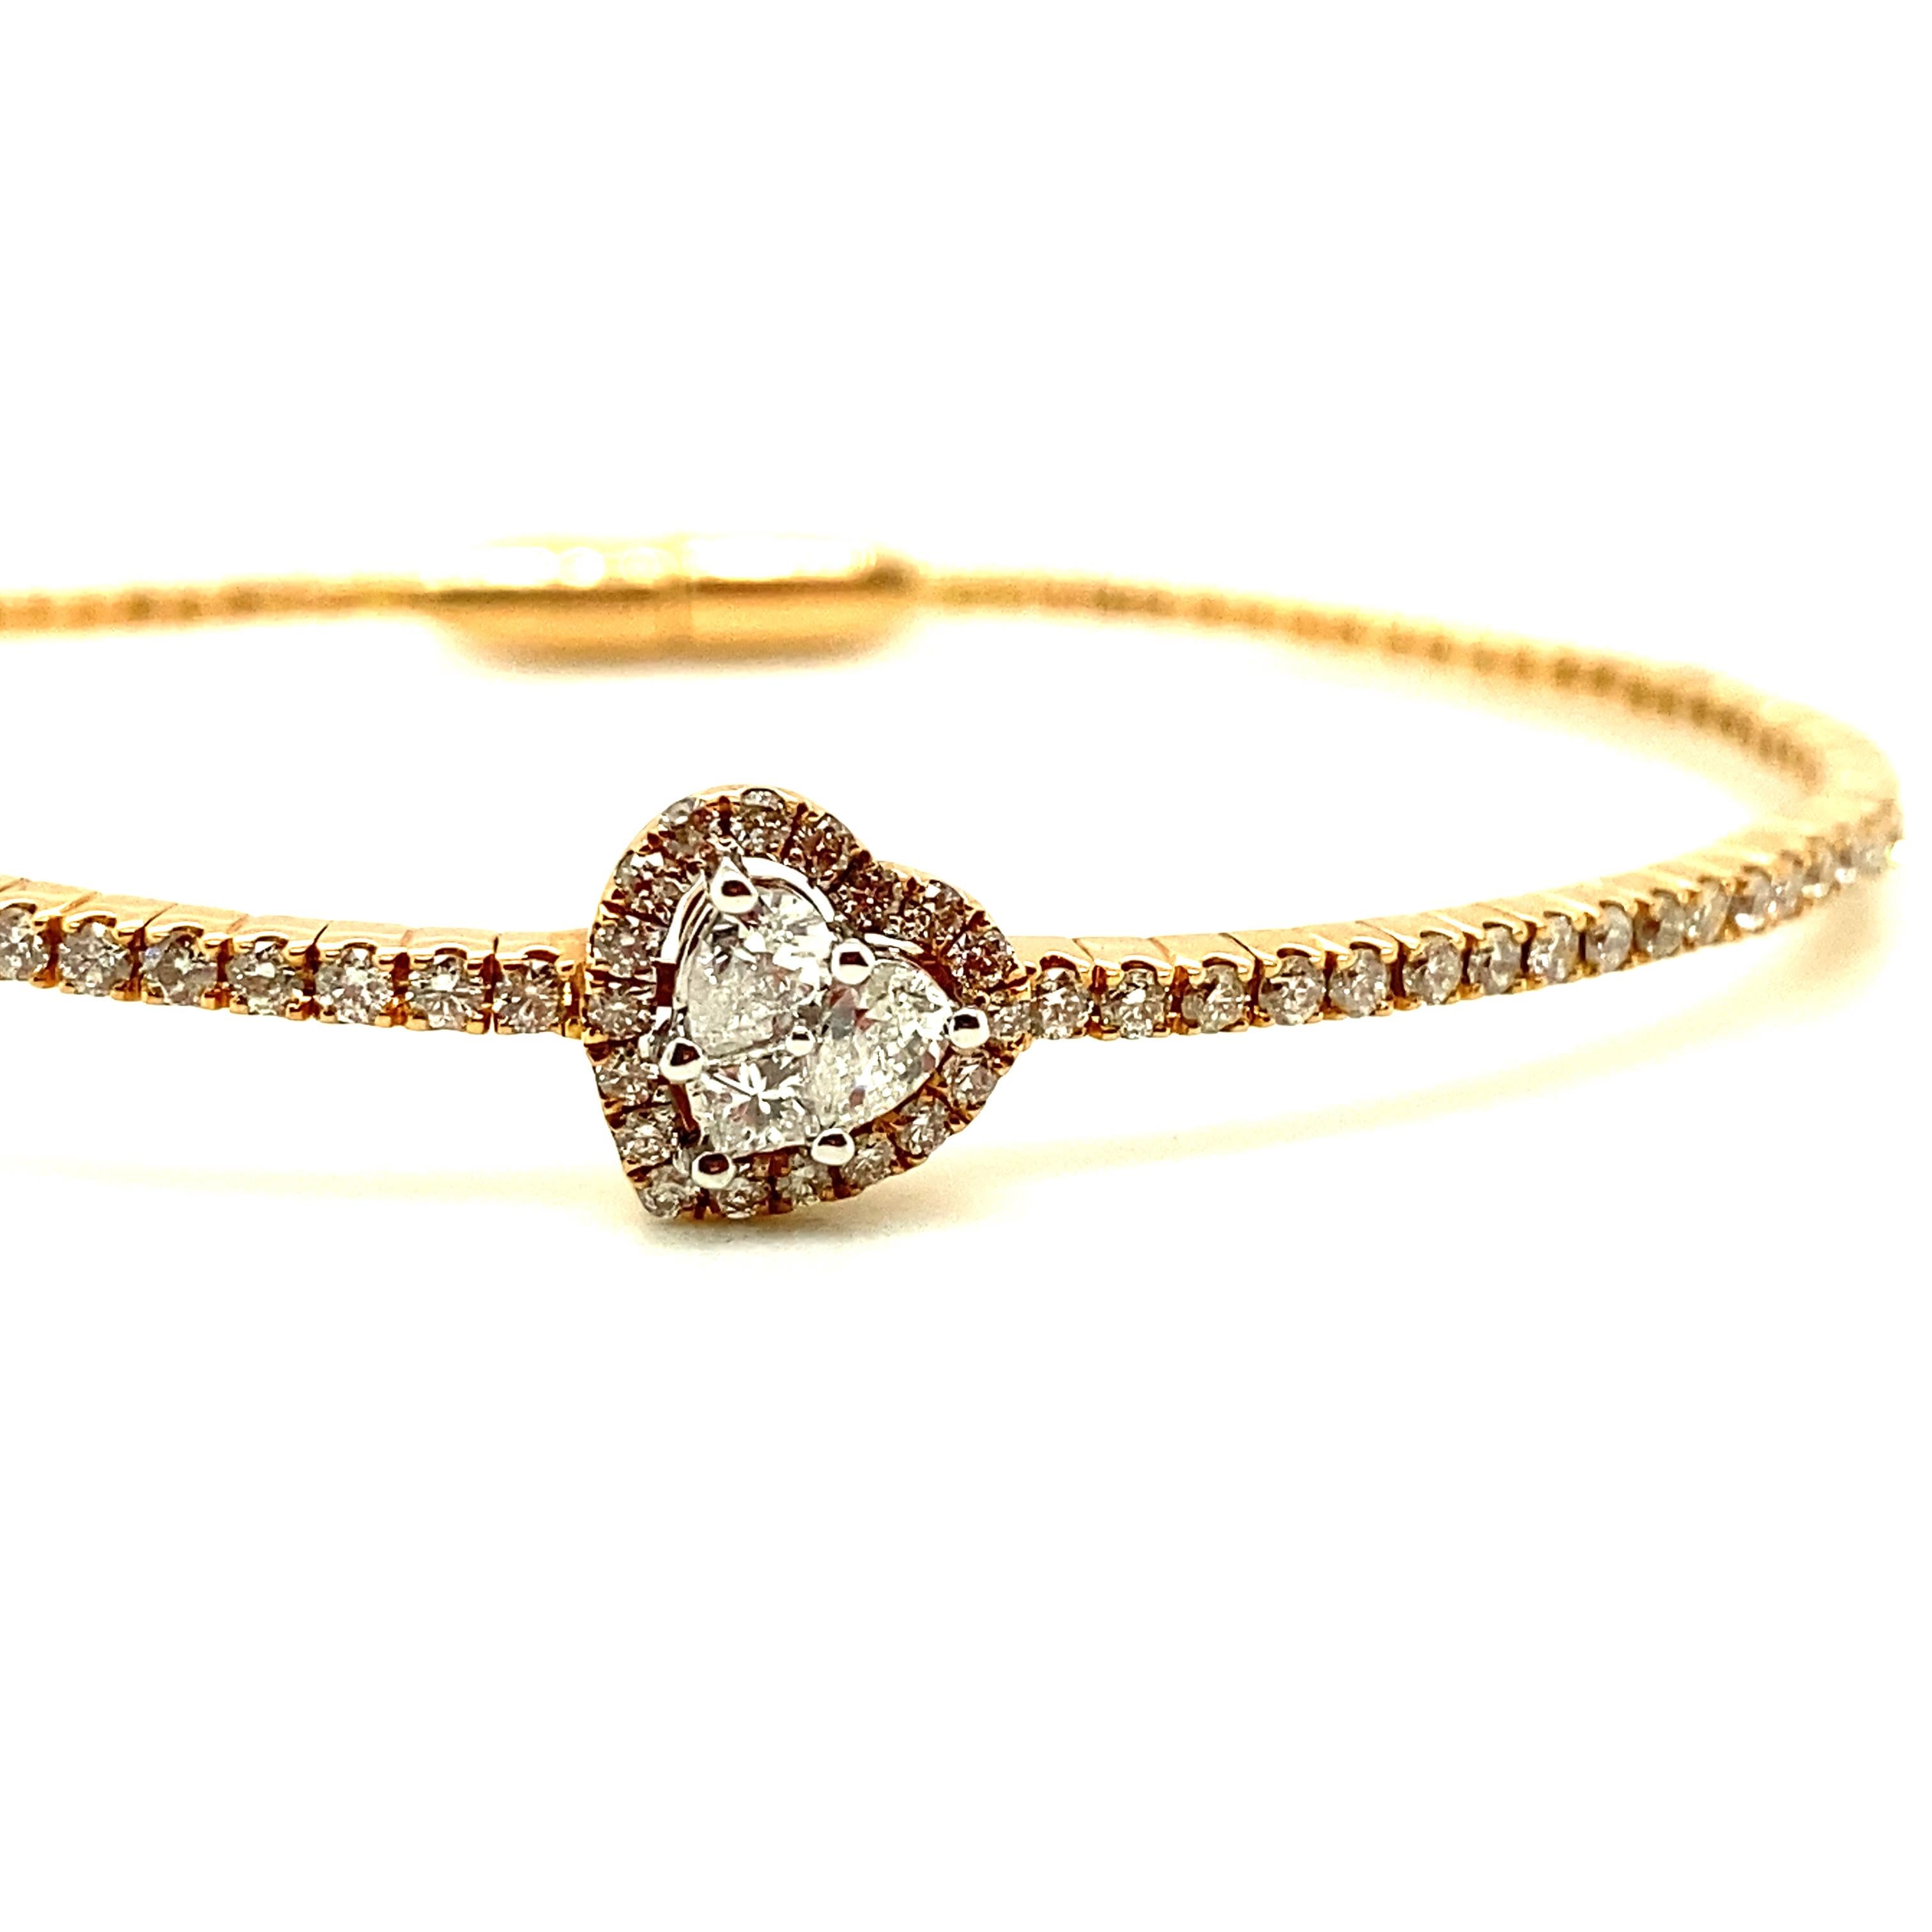 Armband aus Weißdiamant und Roségold:

Das elegante Armband zeichnet sich durch eine Gruppe von Diamanten in Mischform in der Mitte und runde Diamanten im Brillantschliff aus, die sich über die Hälfte des Armbands erstrecken und insgesamt 0,73 Karat